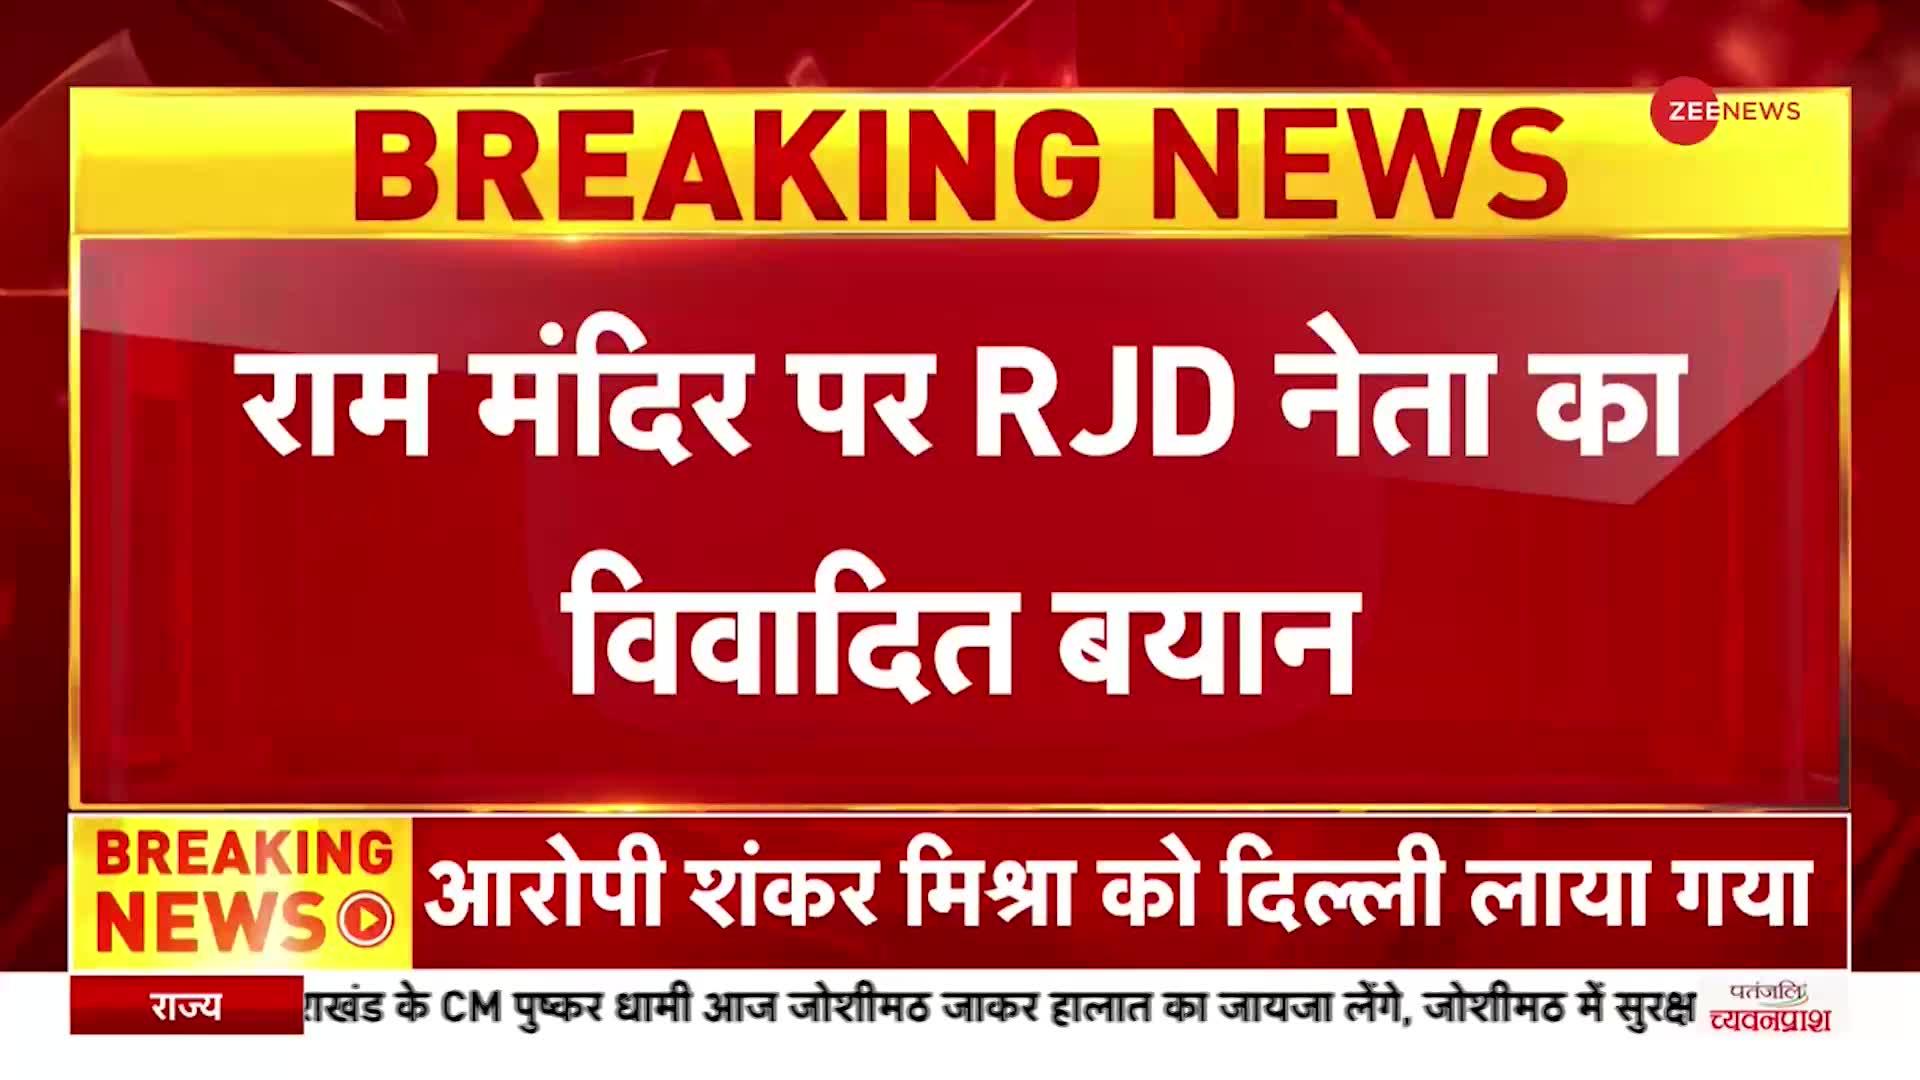 Breaking News: RJD नेता का राम मंदिर पर विवादित बयान, कहा- नफरत की जमीन पर बन रहा राम मंदिर